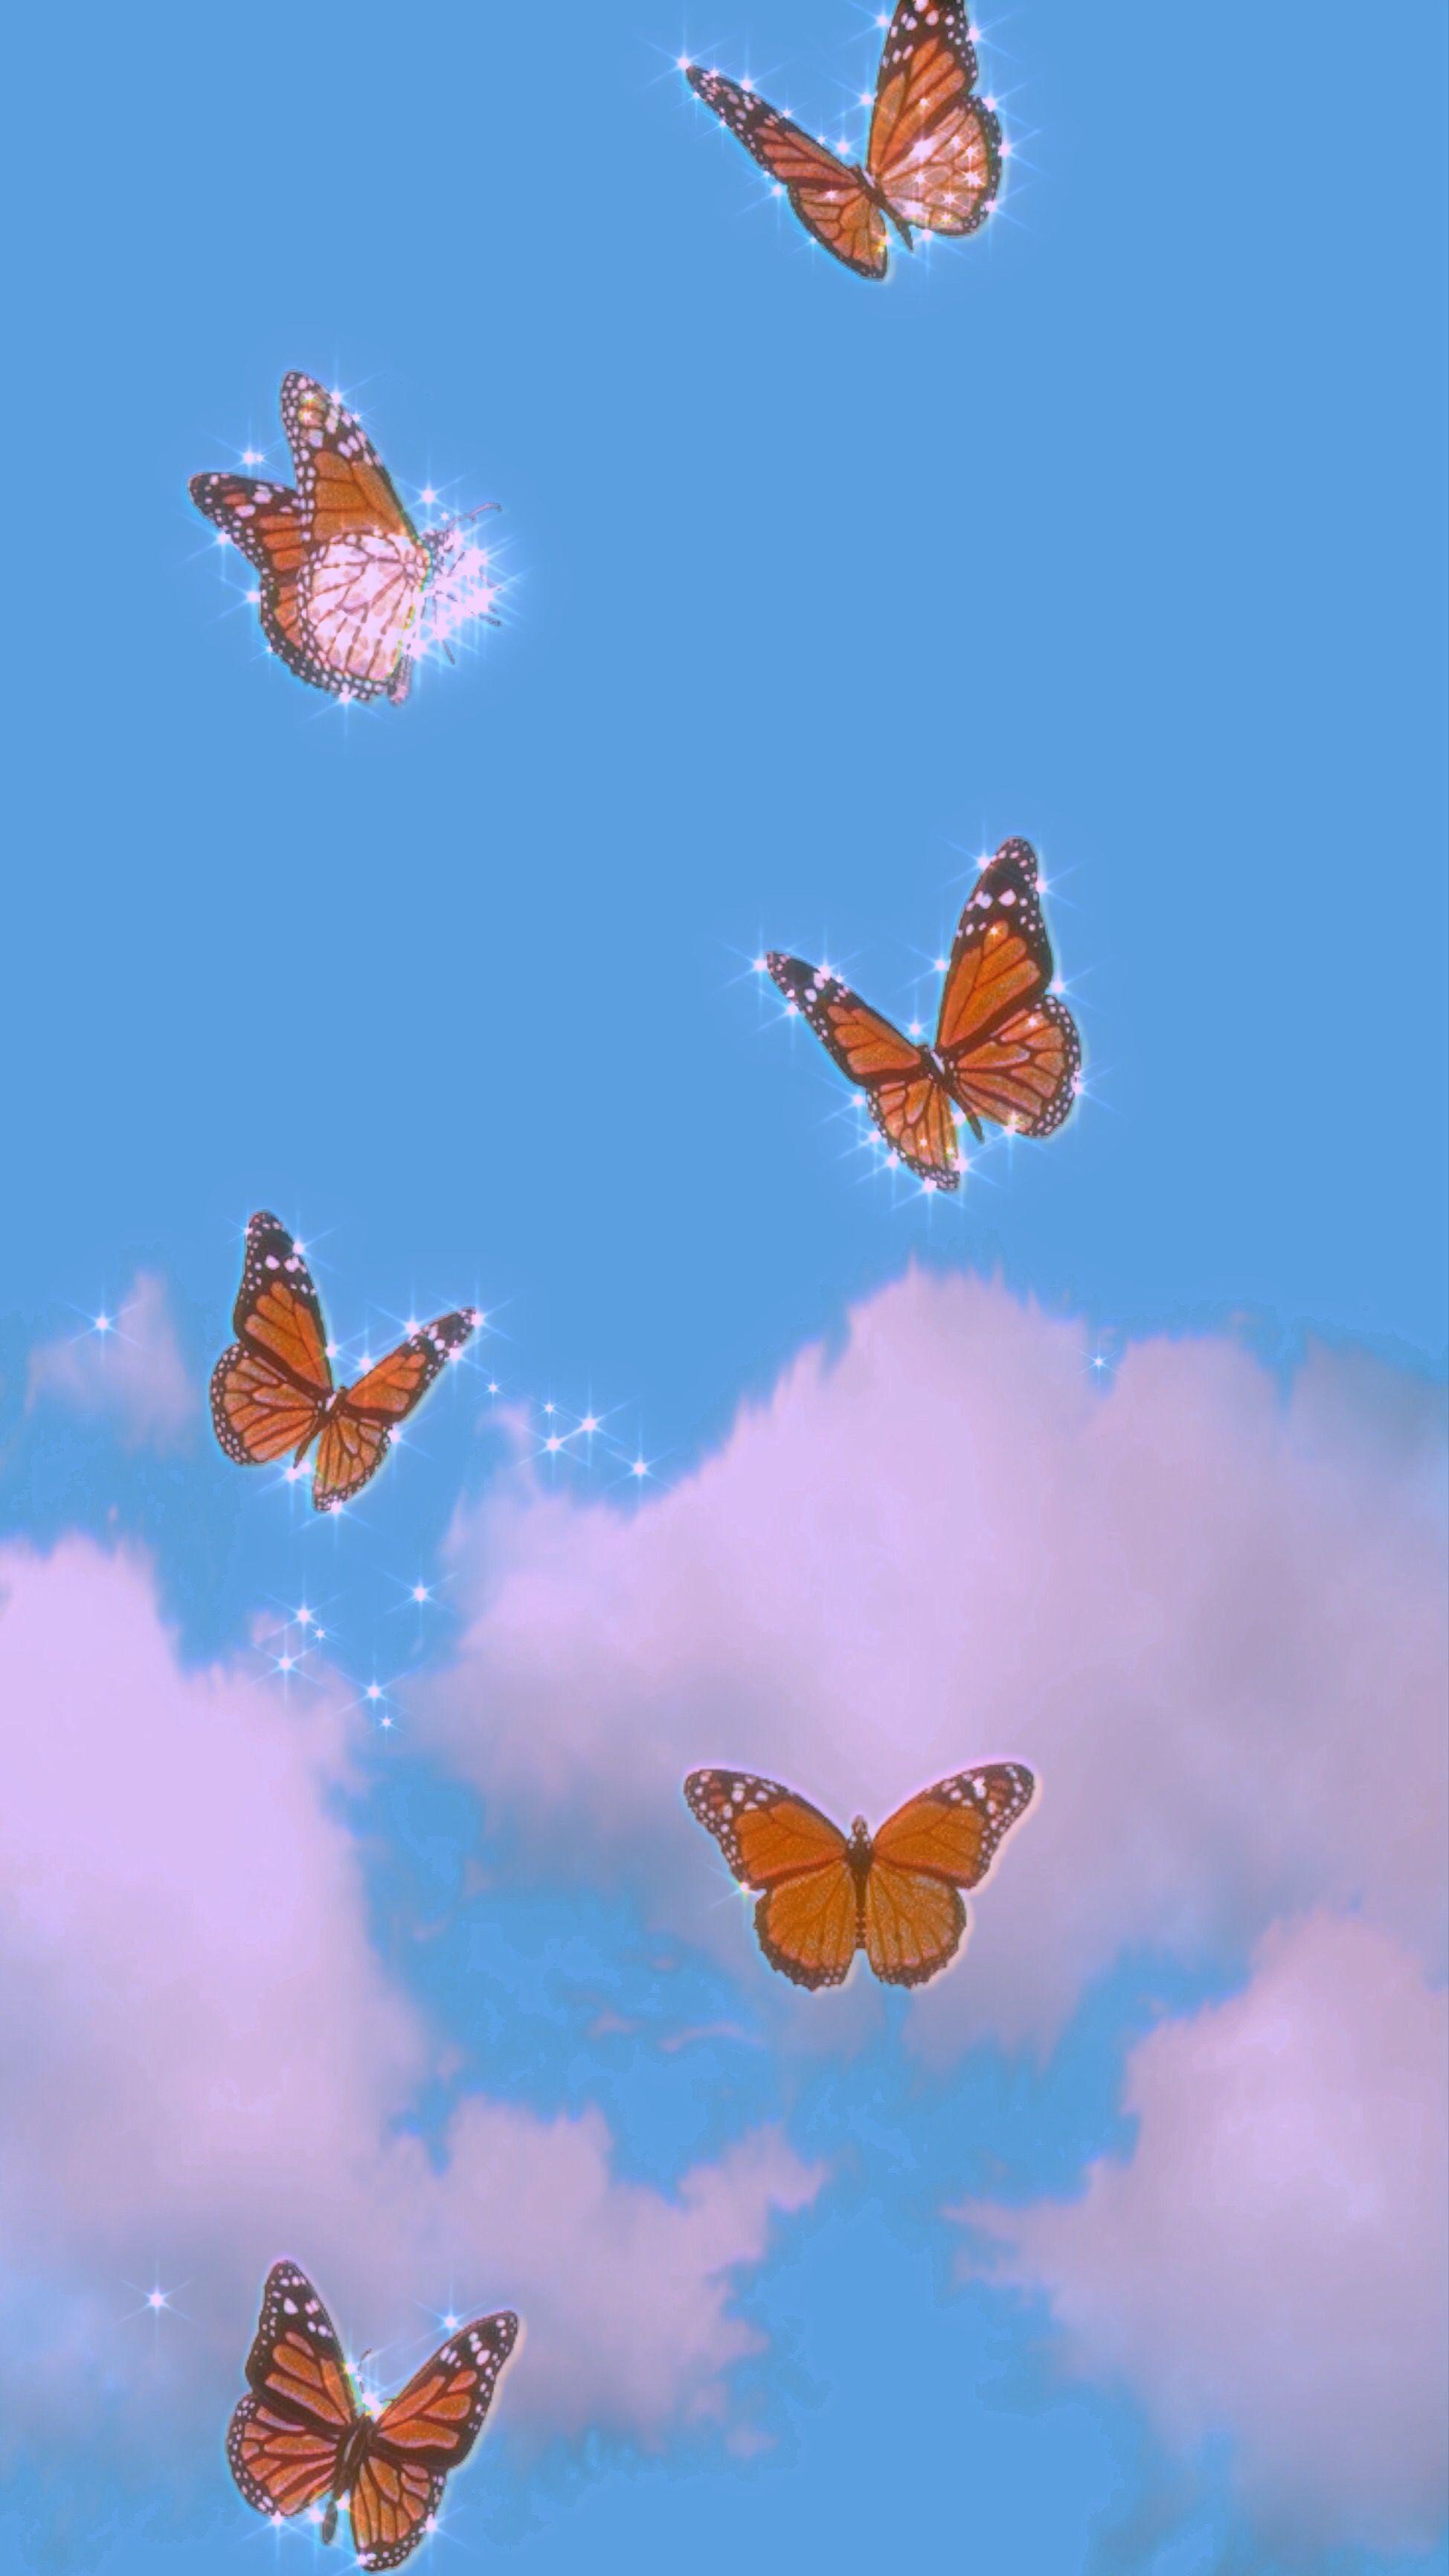 Minimalist Butterfly Wallpapers - Top Free Minimalist Butterfly ...